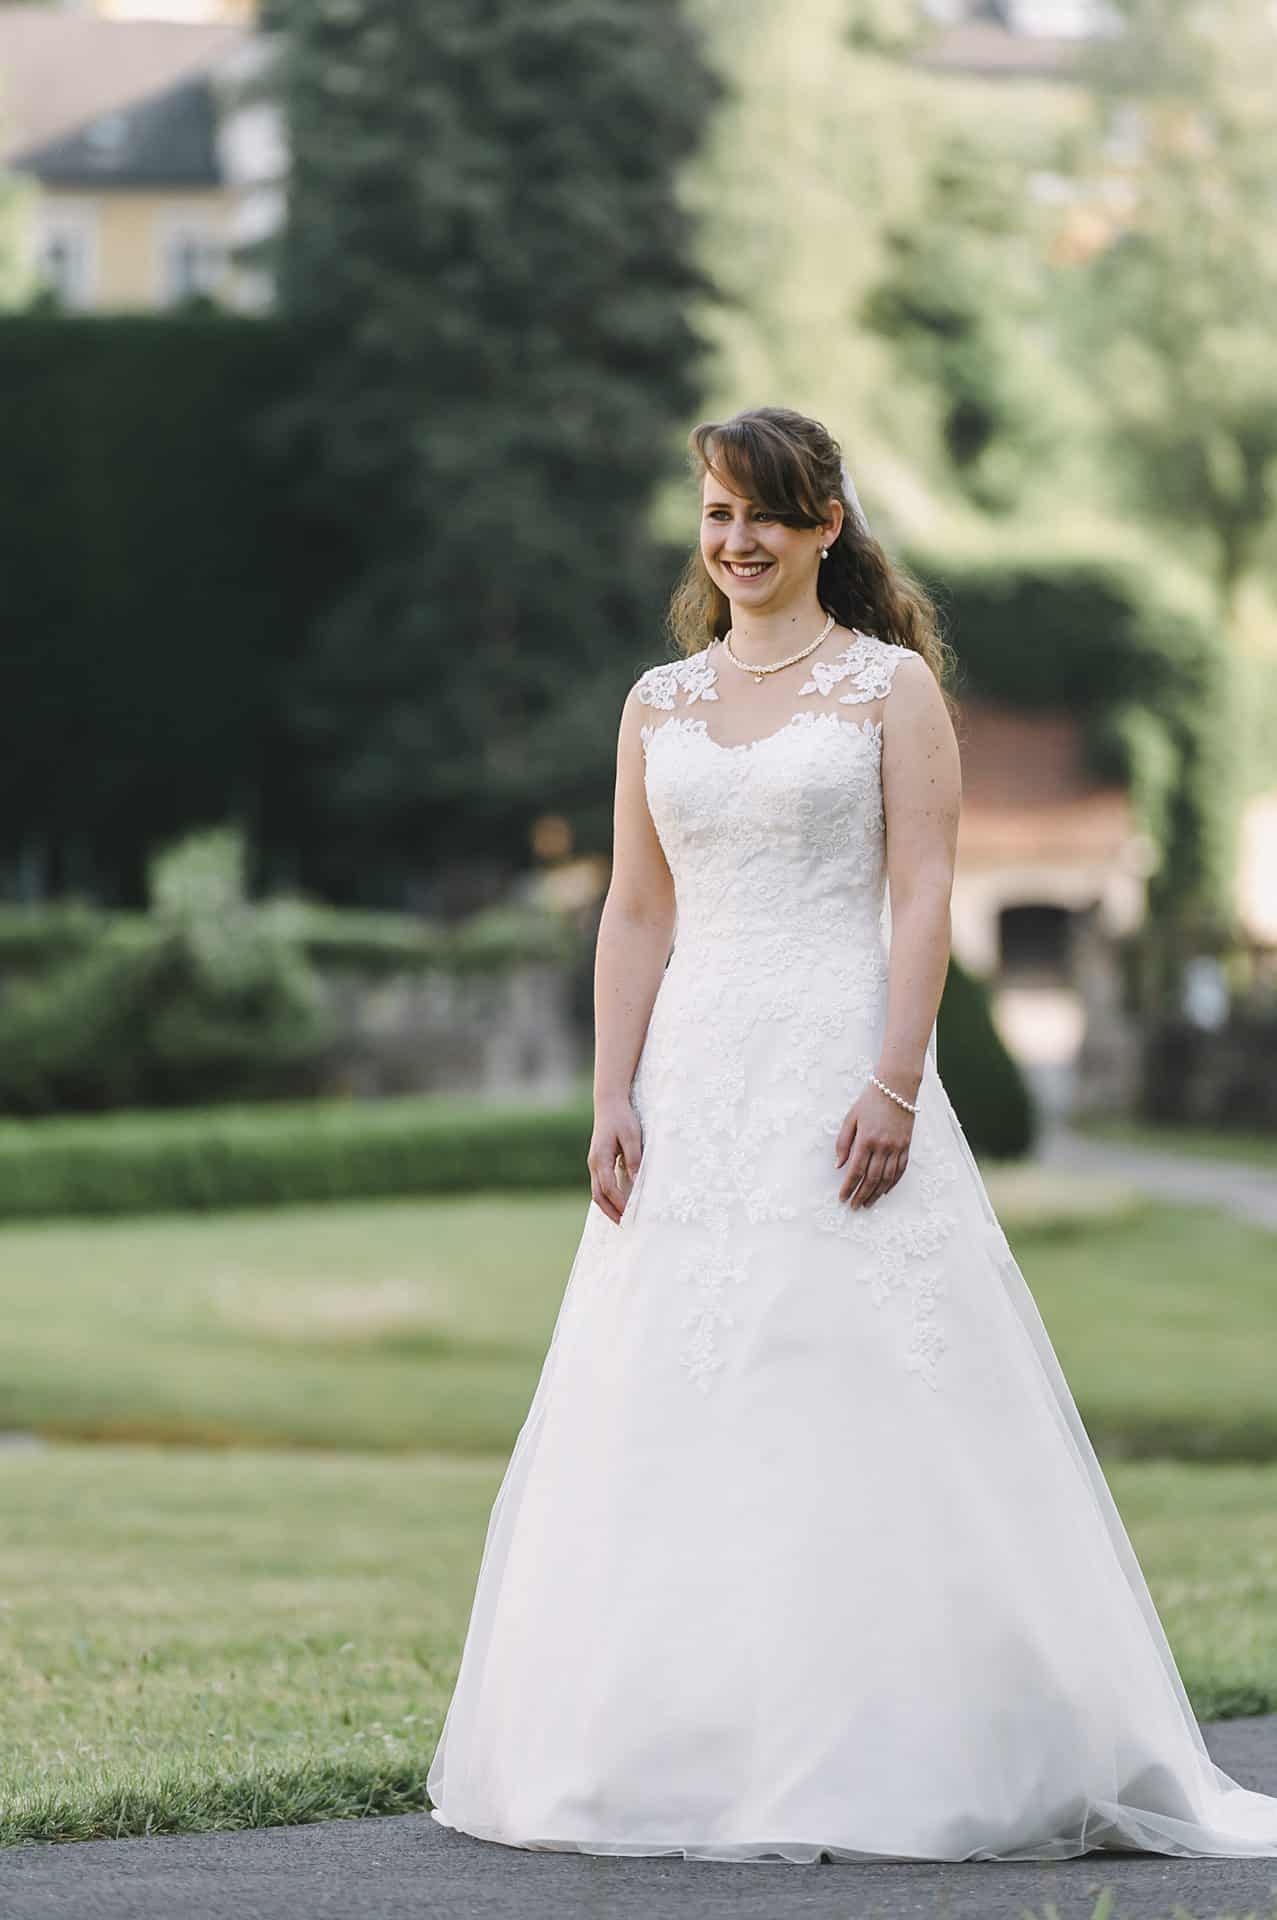 Eine Braut in einem Hochzeitskleid steht in einem Park.